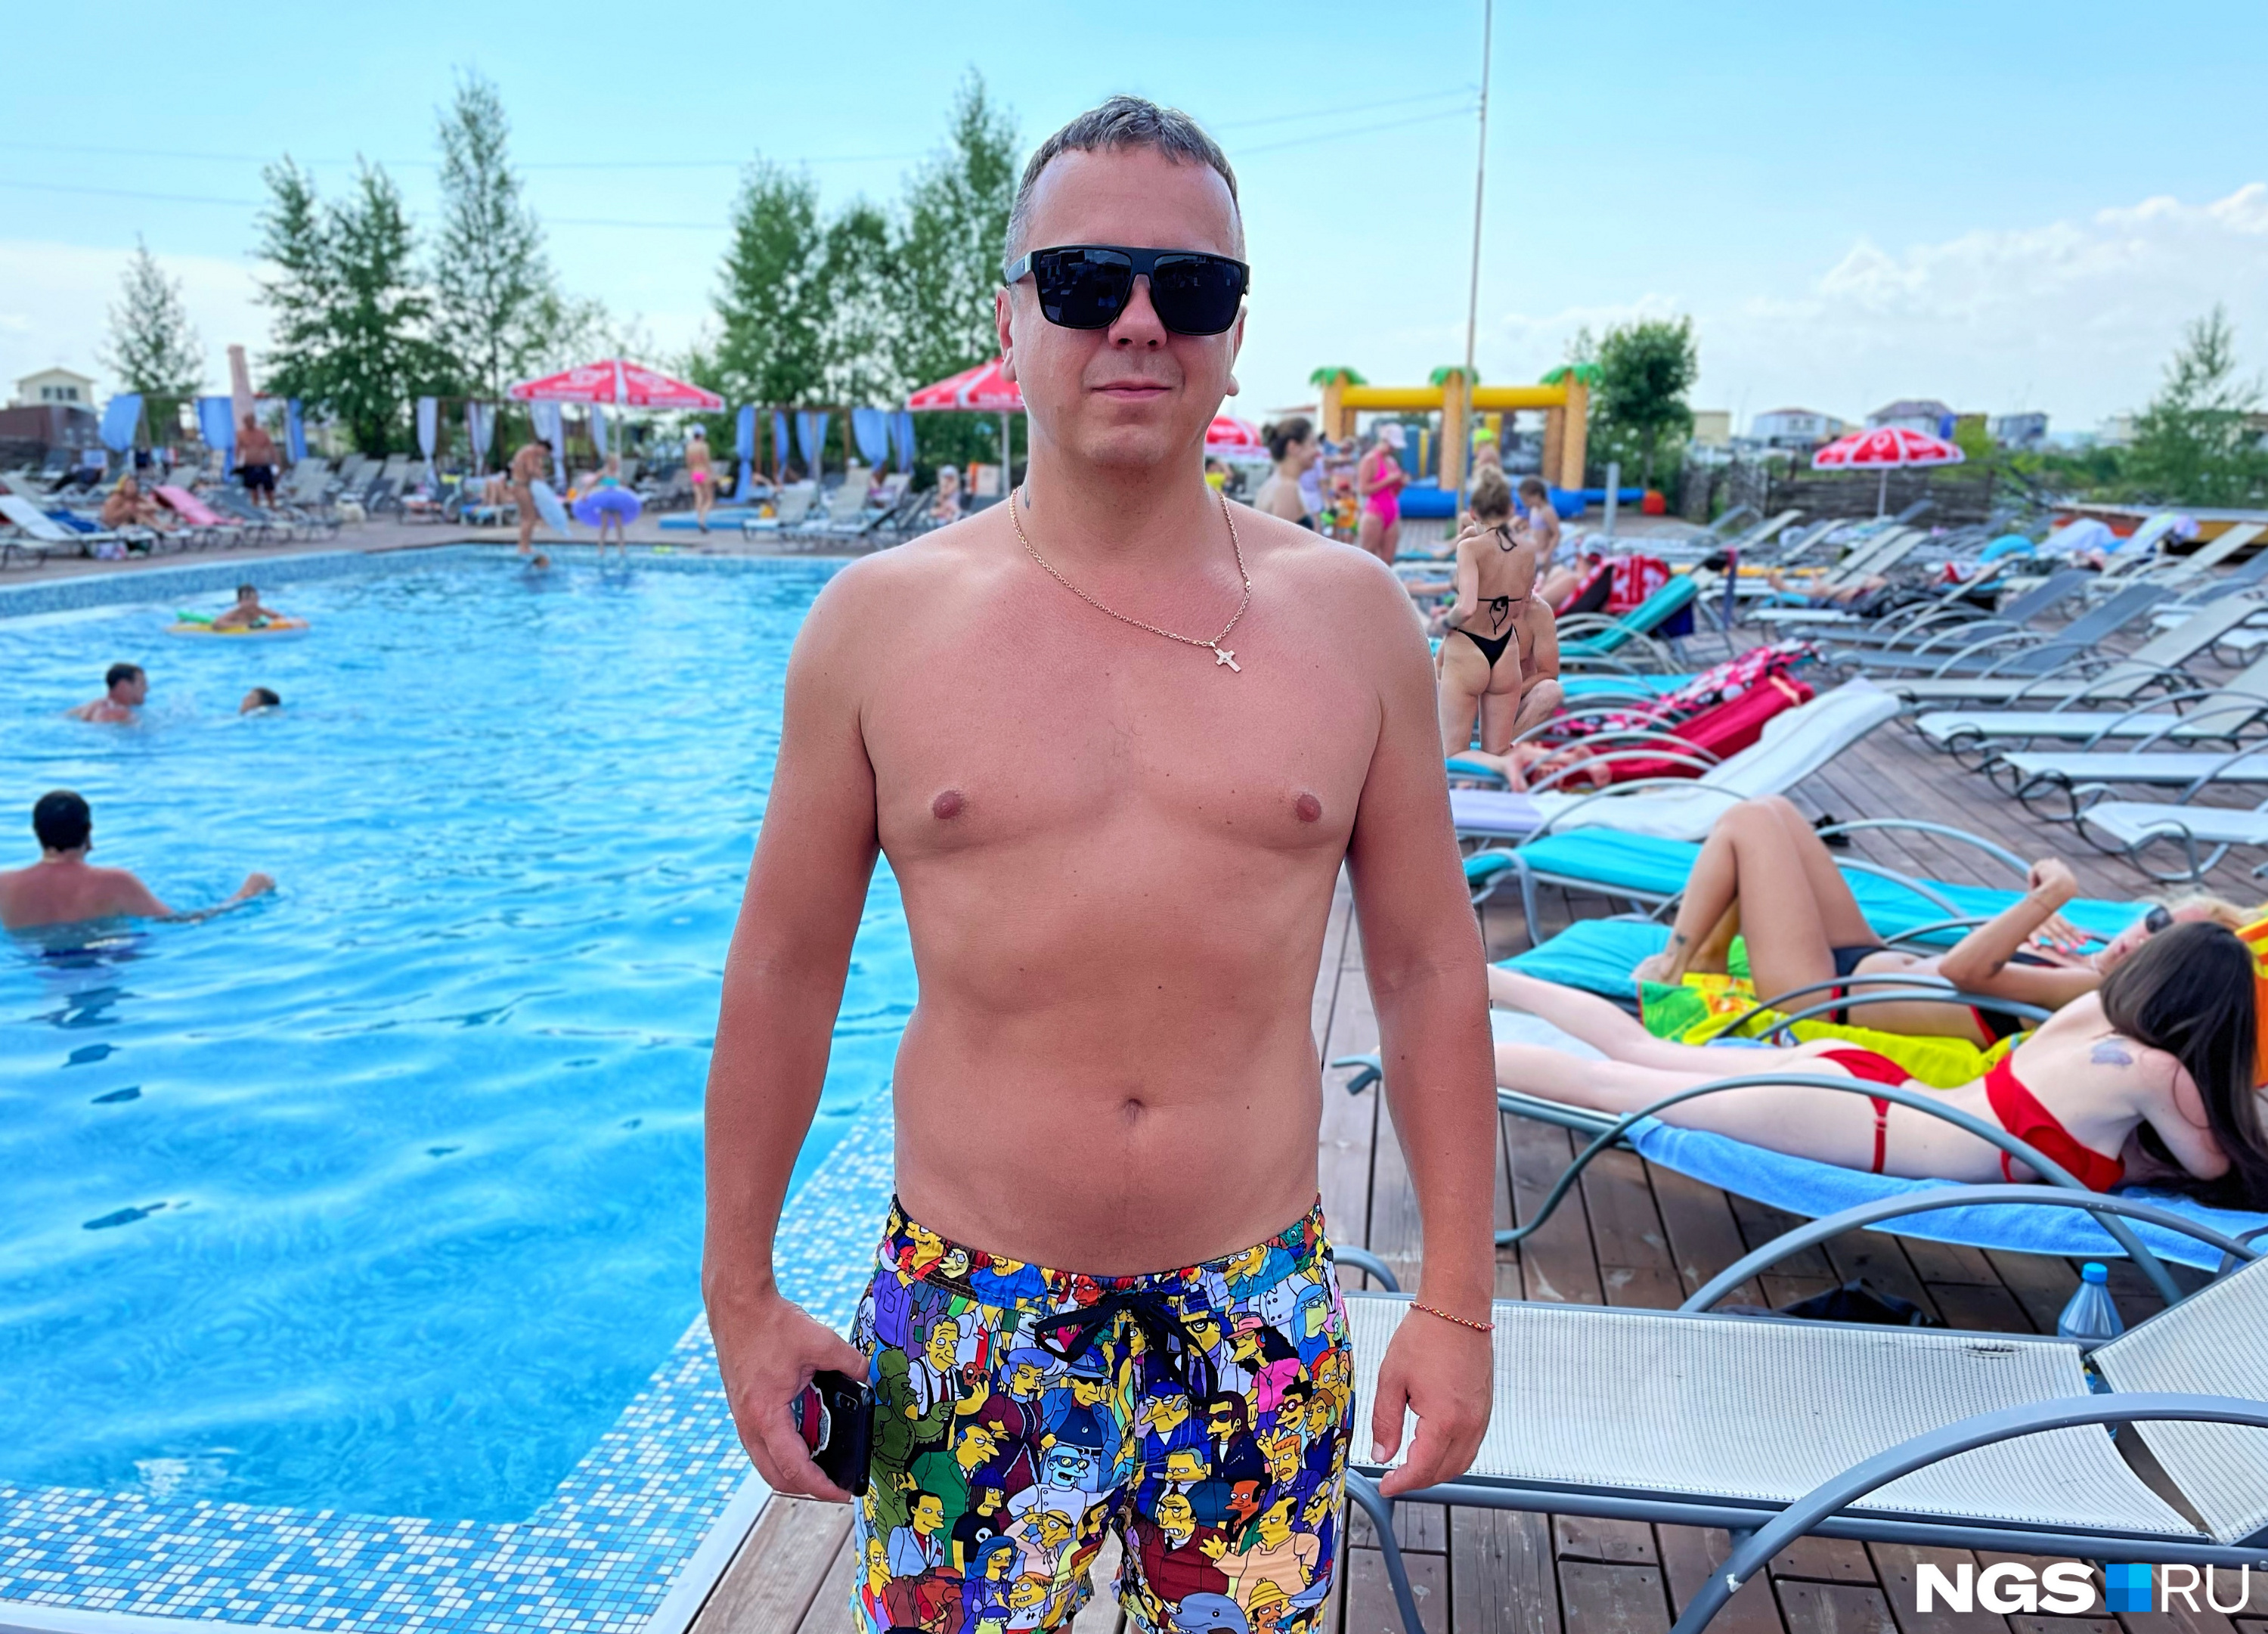 Станиславу нравится отдых у бассейна